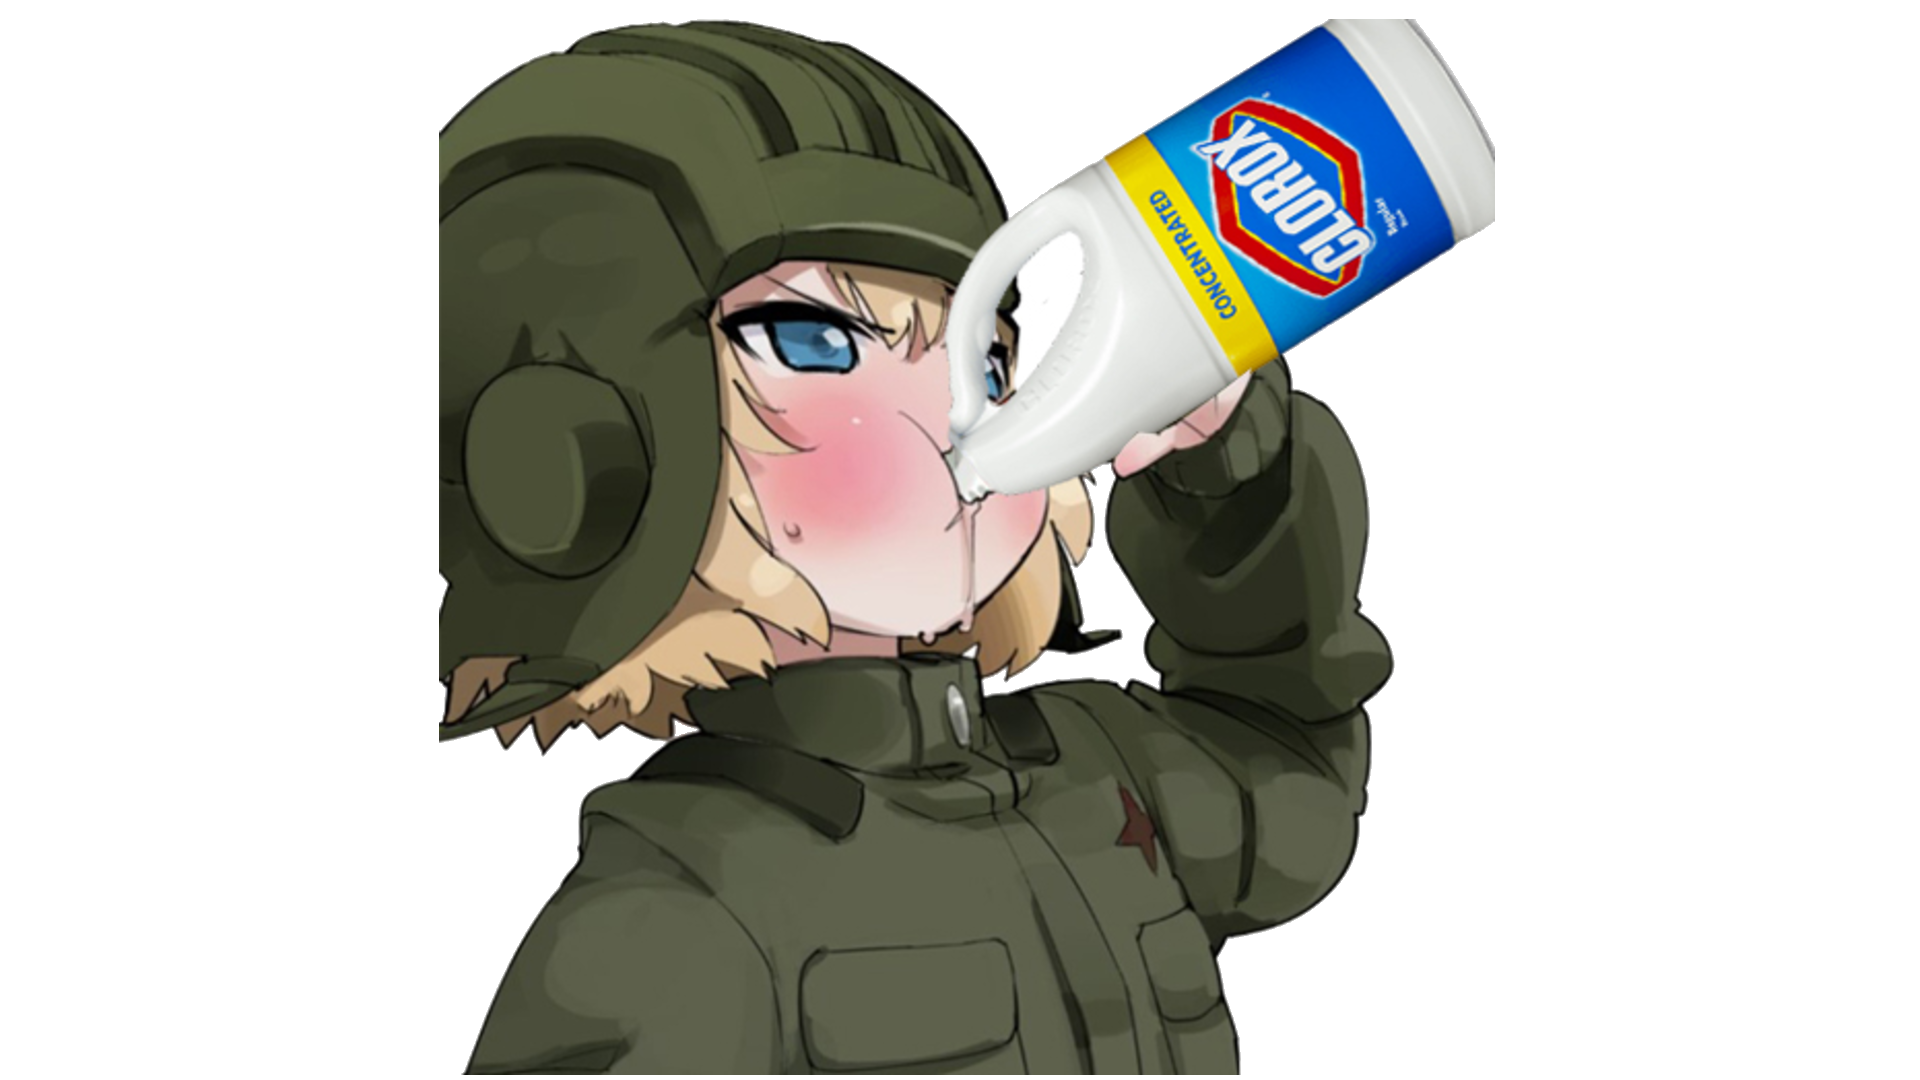 Best Anime Girl Drinking Bleach Sticker for mobile